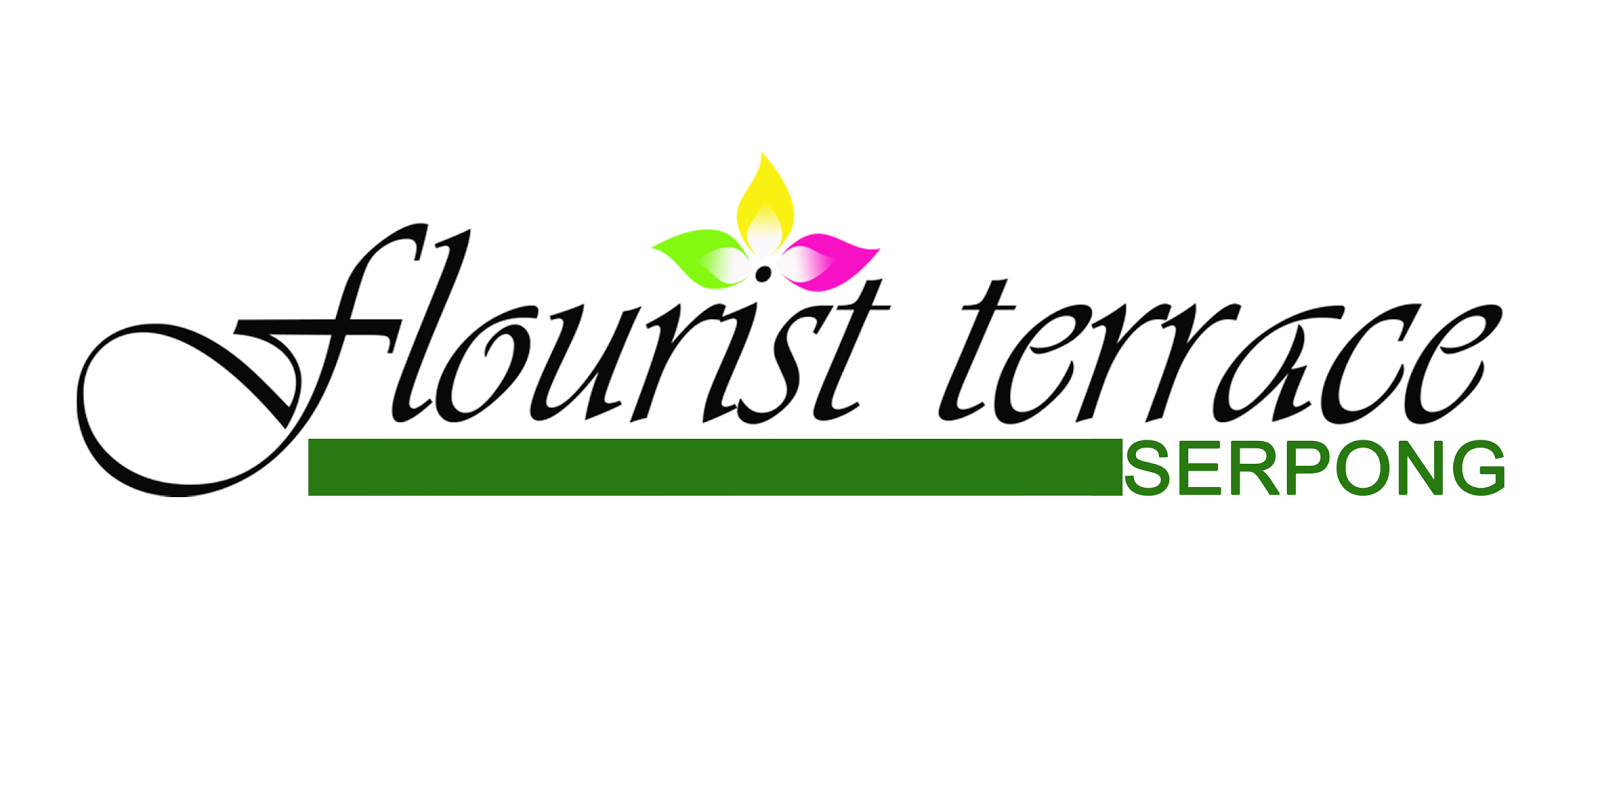 Cluster Flourist Terrace Serpong